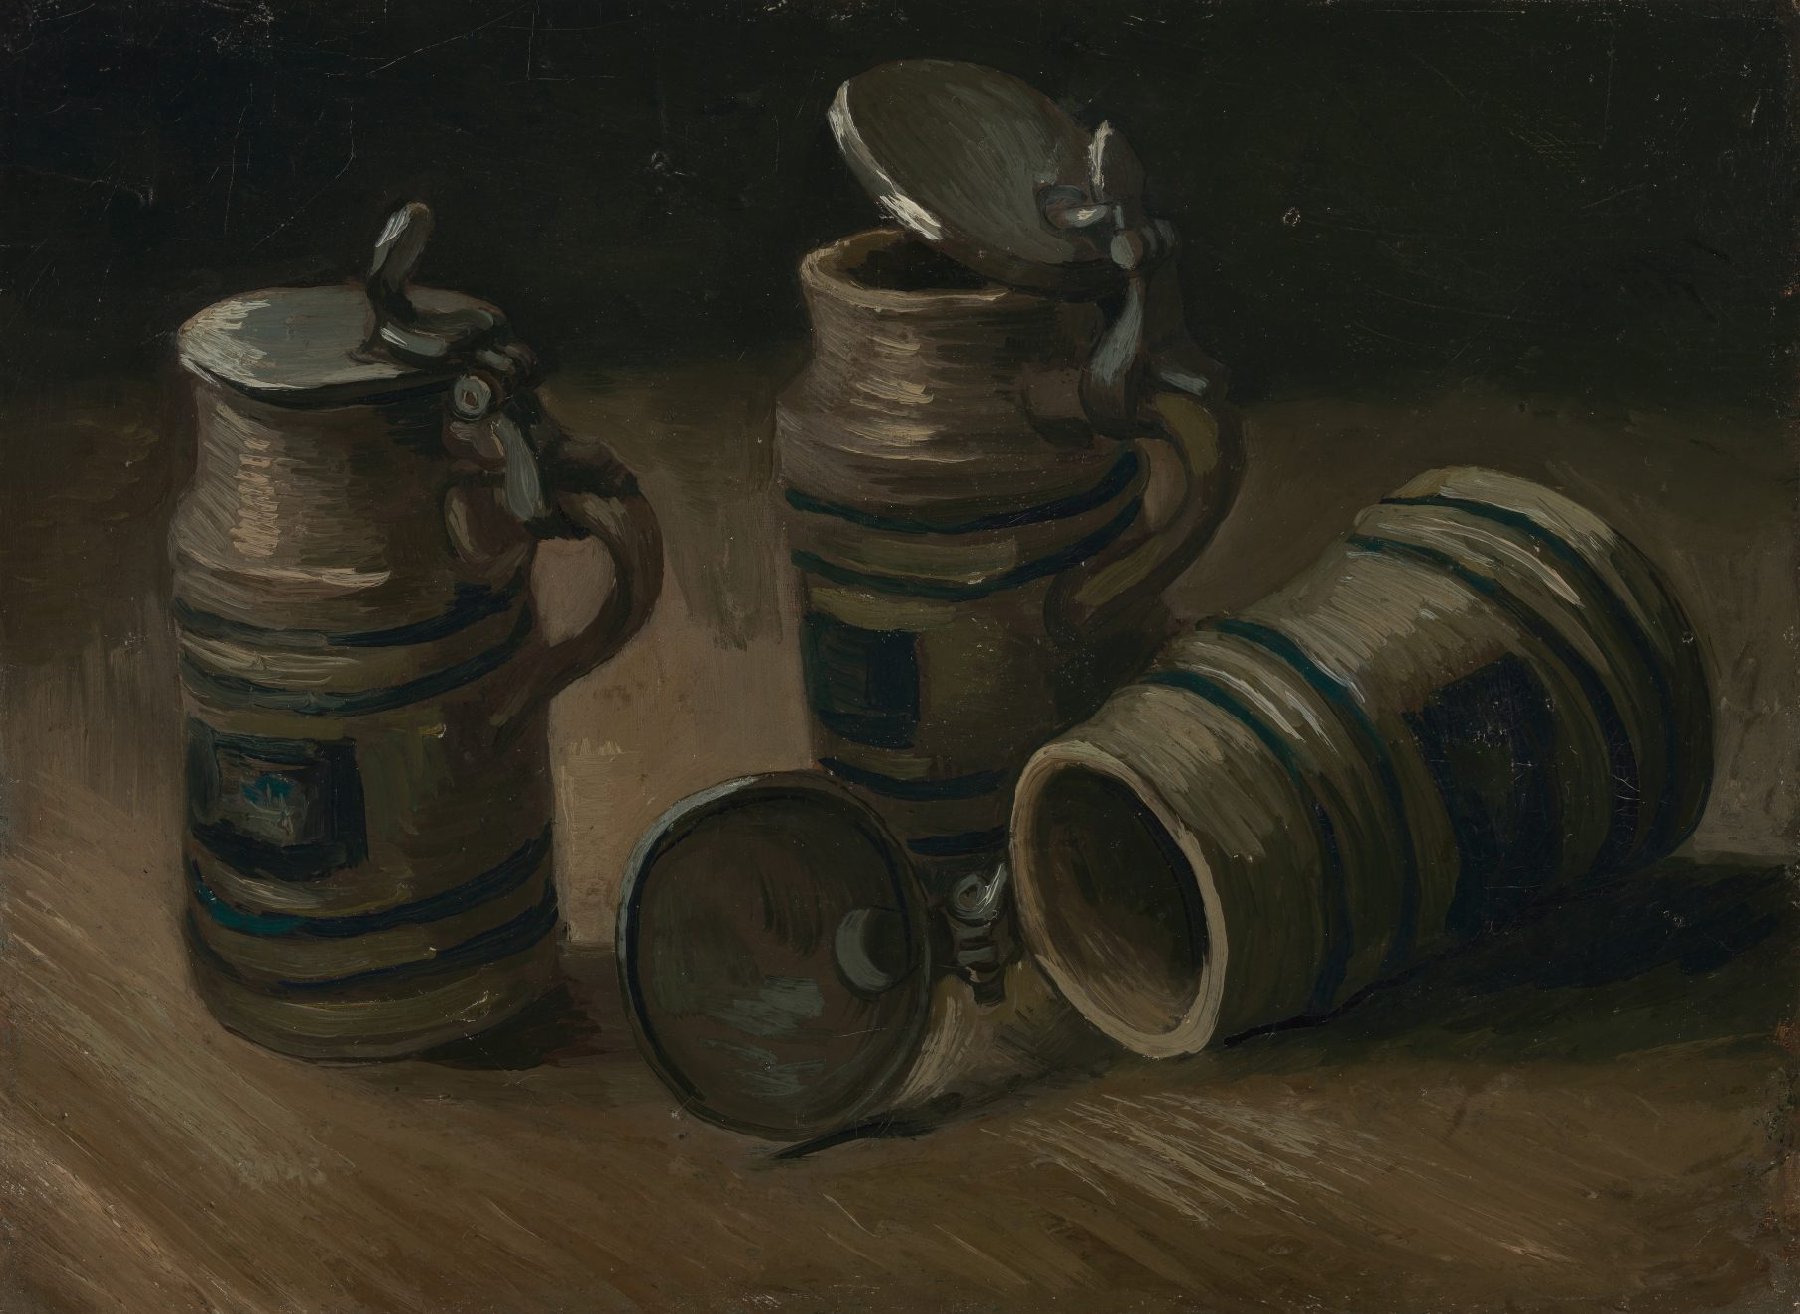 Bierpullen Vincent van Gogh (1853 - 1890), Nuenen, september-oktober 1885